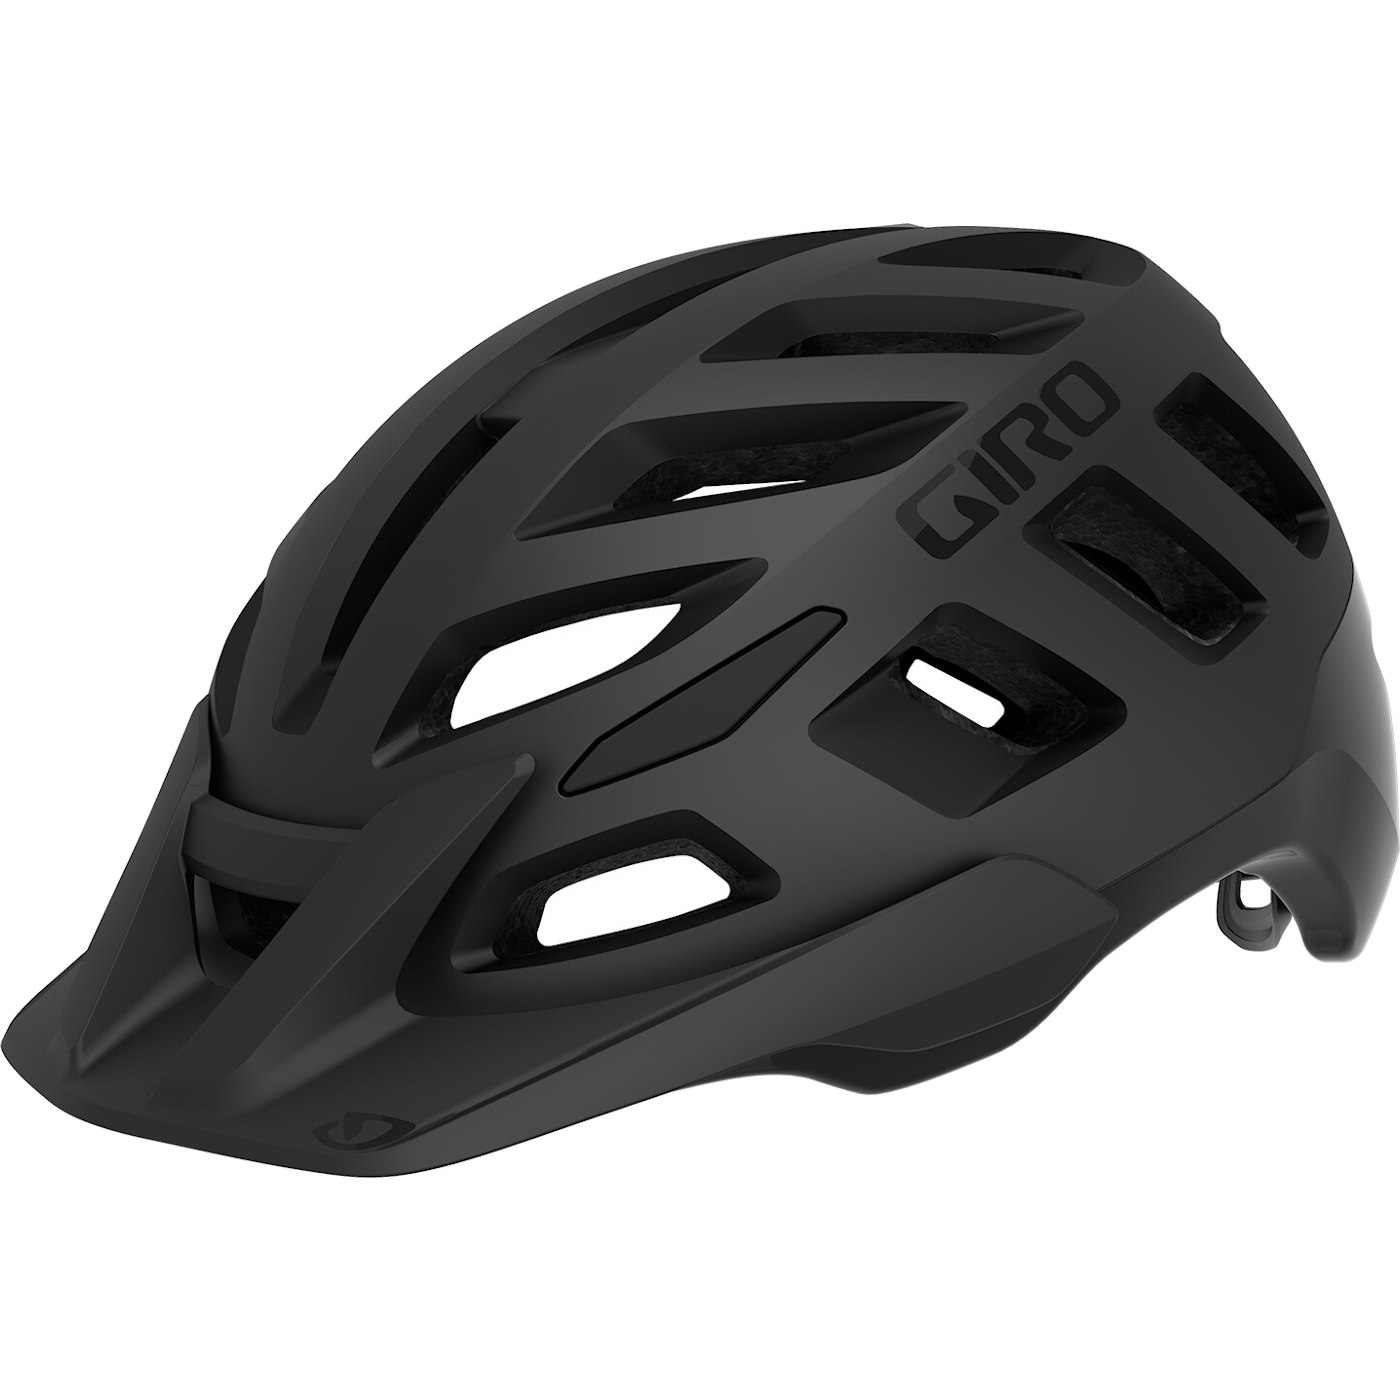 Produktbild von Giro Radix MIPS Helm - matte black